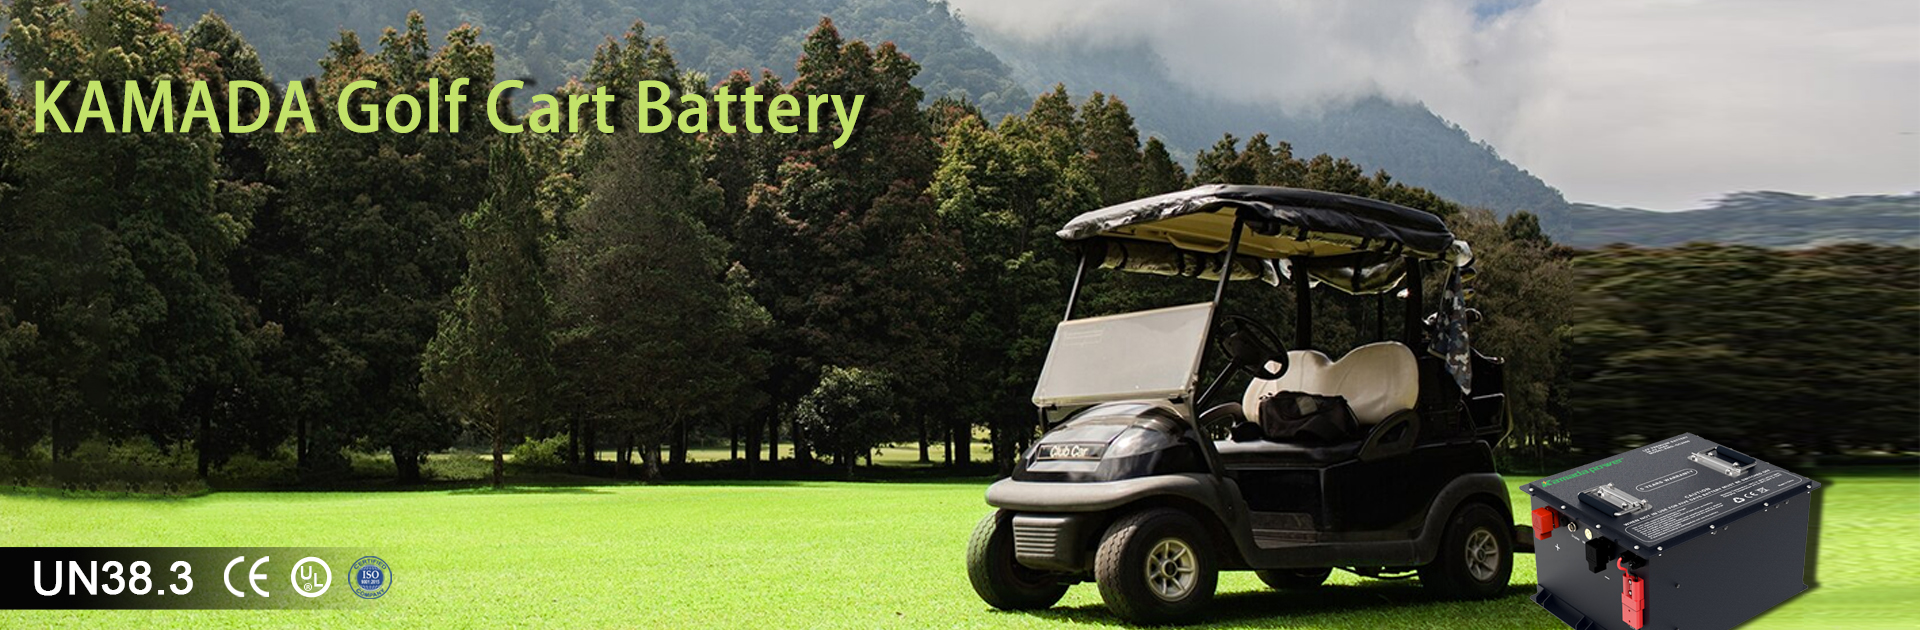 Fabryka akumulatorów do wózków golfowych Kamada